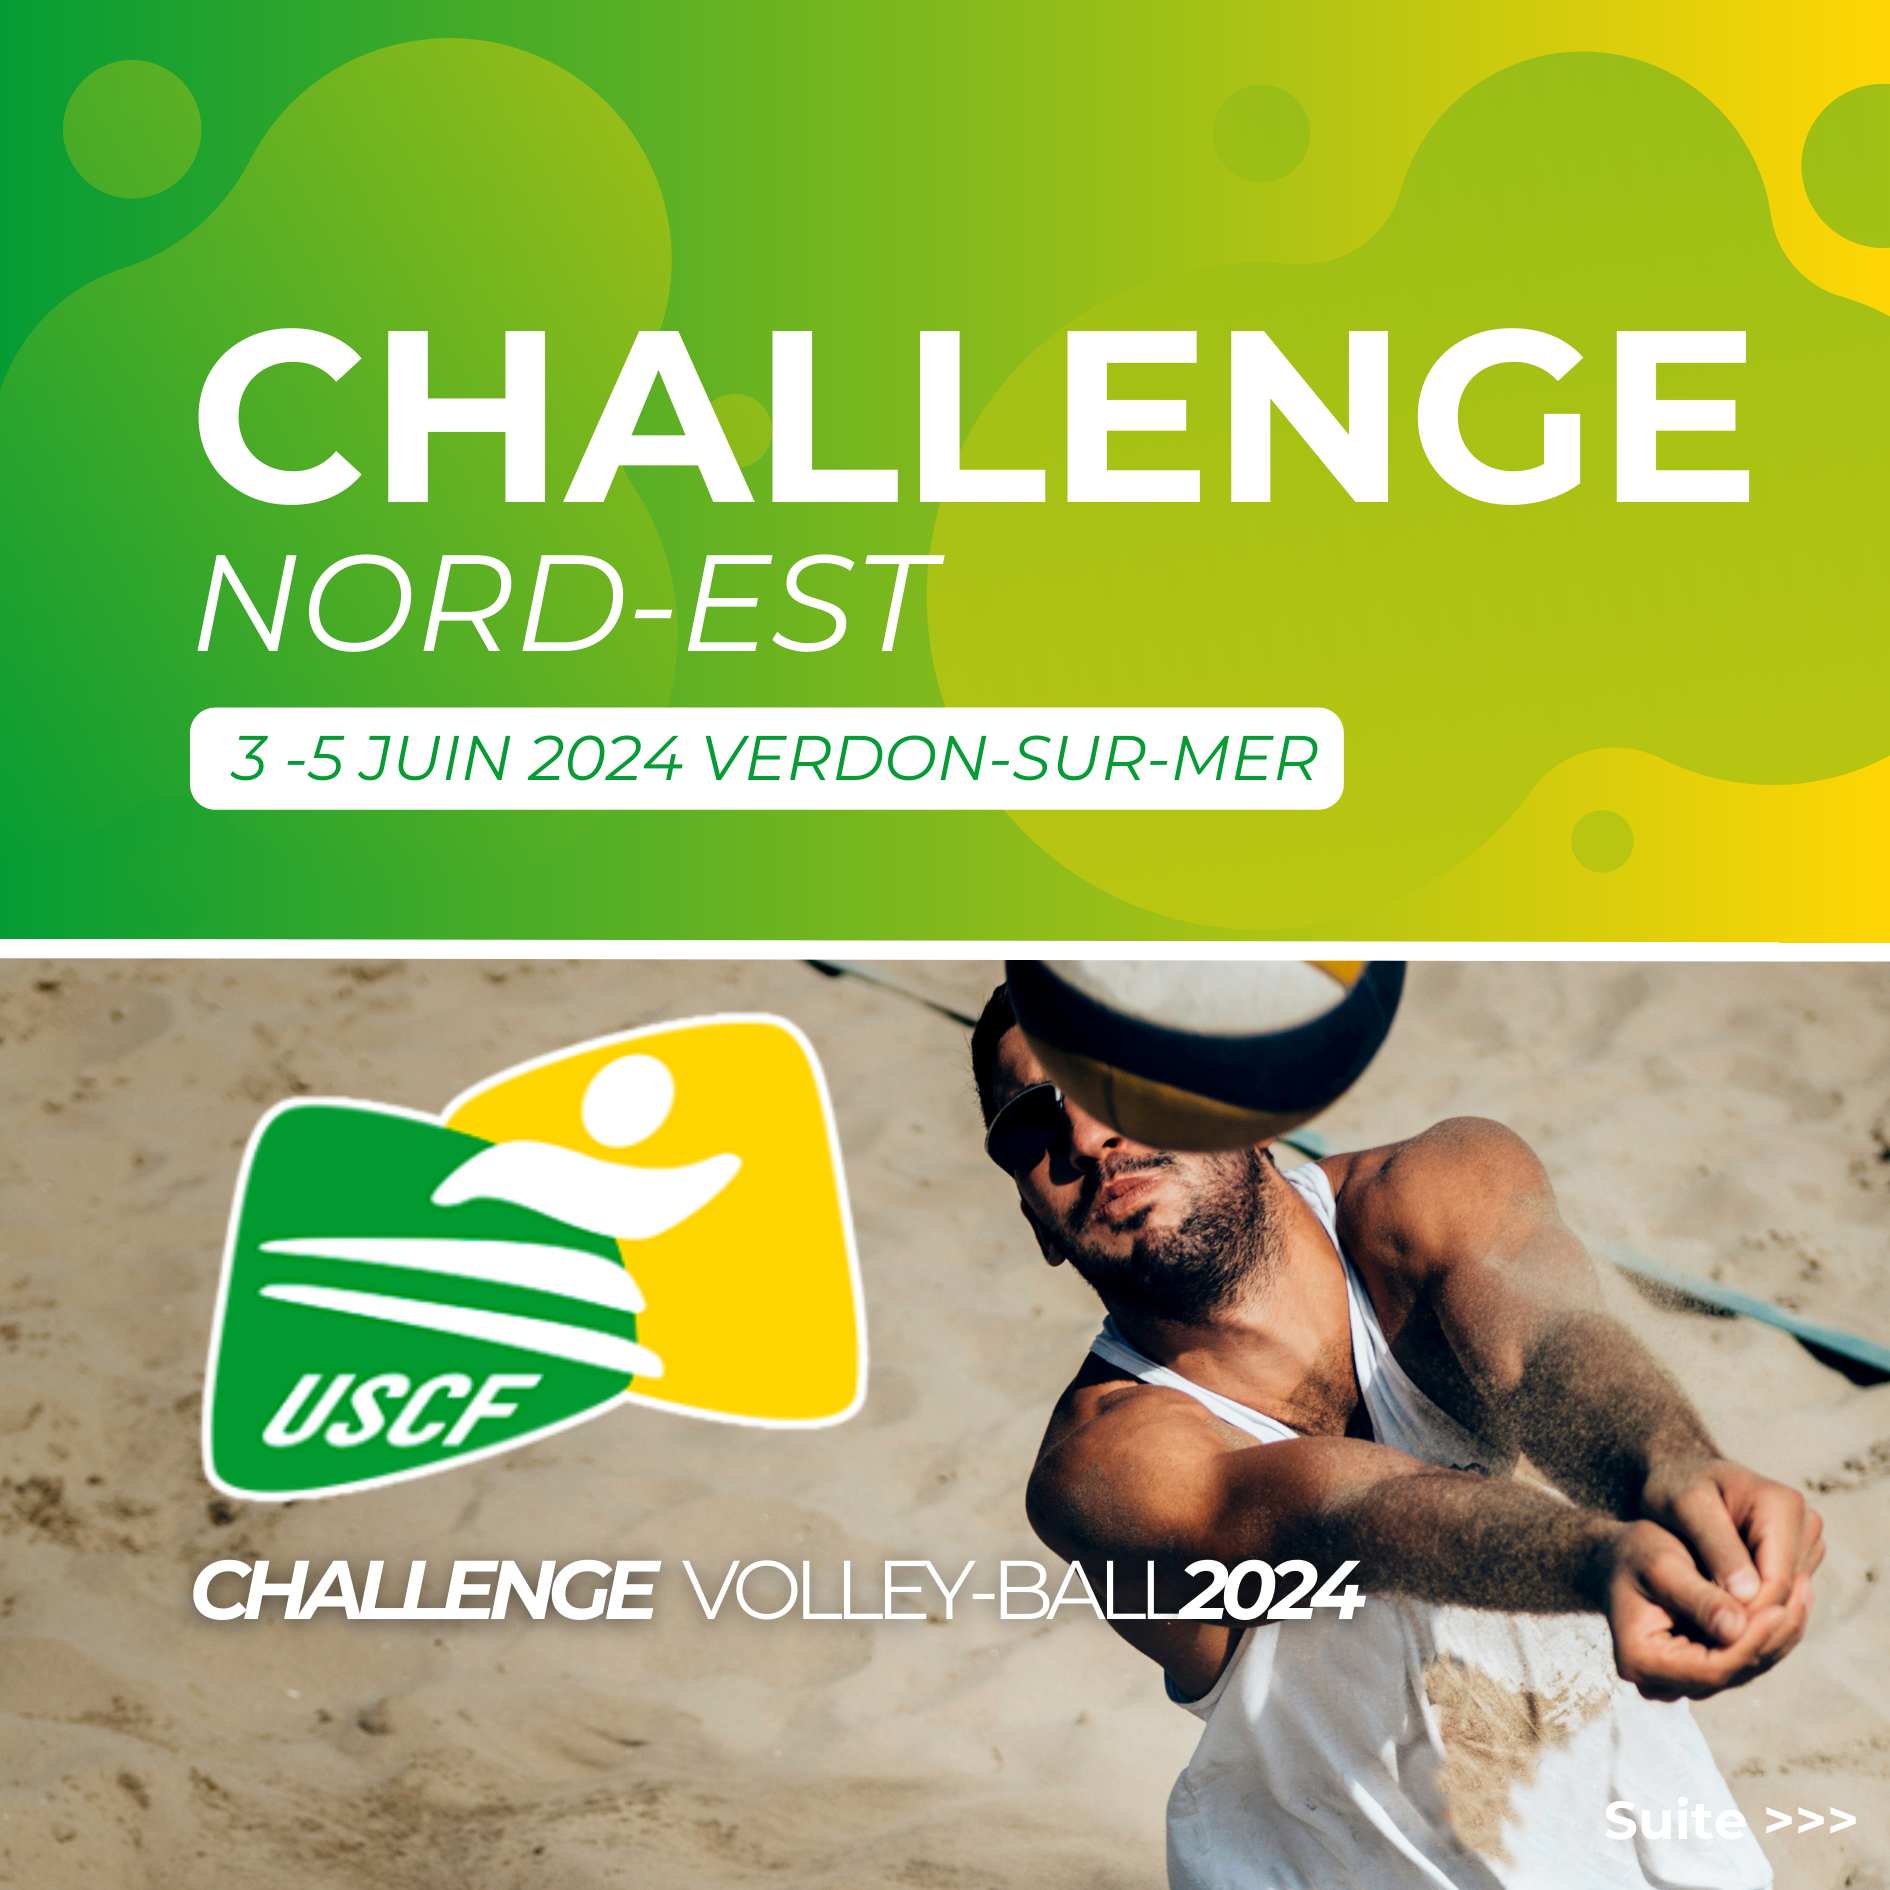 Le challenge de volley-ball du Comité Nord-Est au Verdon-sur-Mer